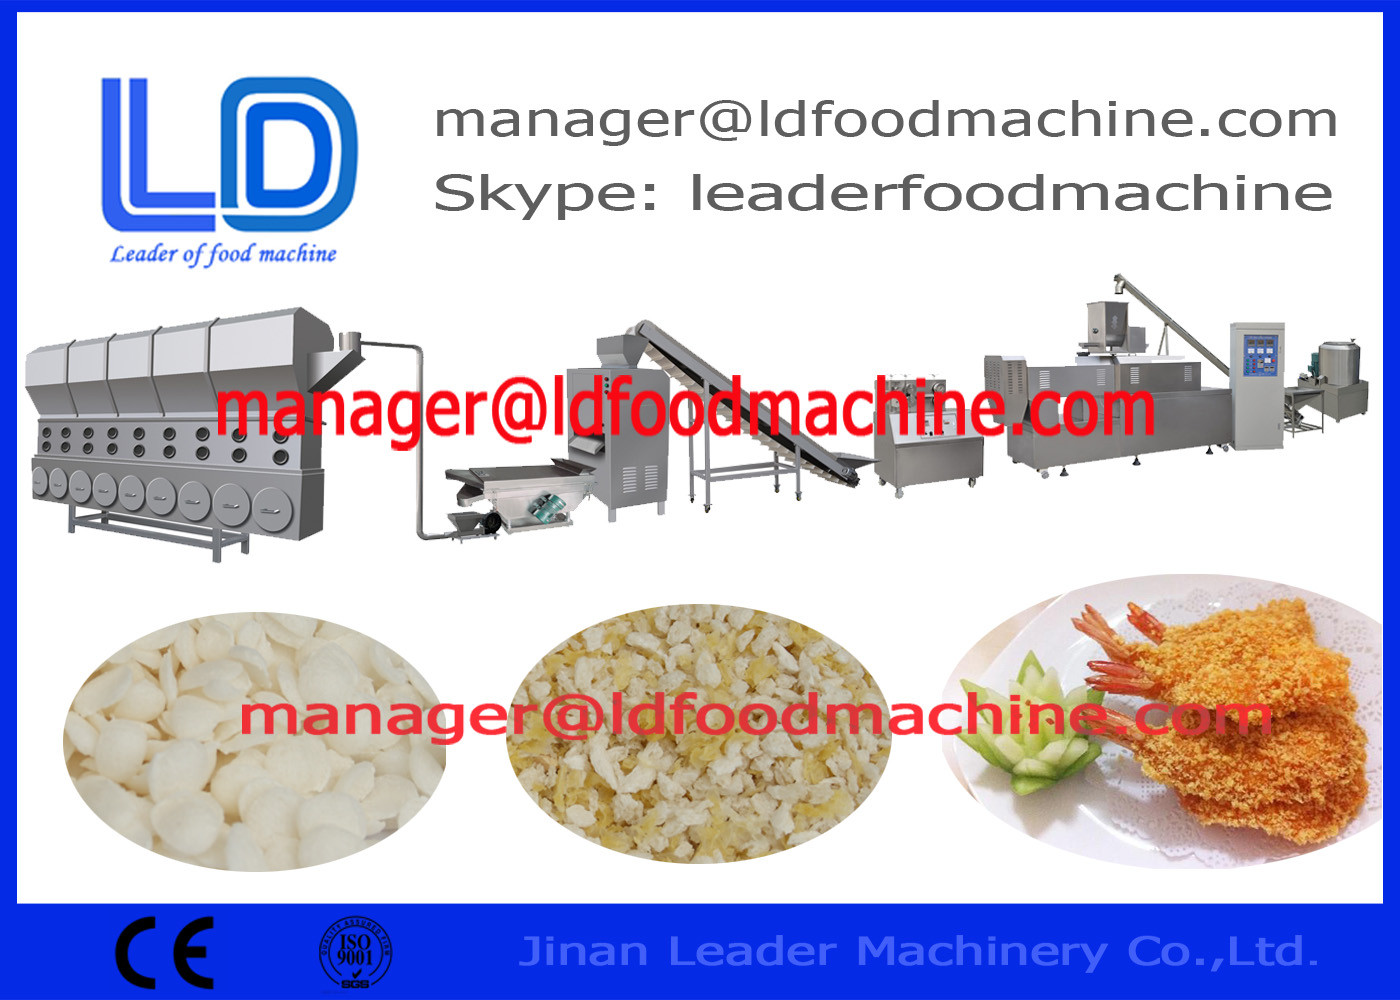 équipement de traitement des denrées alimentaires de machine/des produits alimentaires de miette de pain de filet/fruits de mer